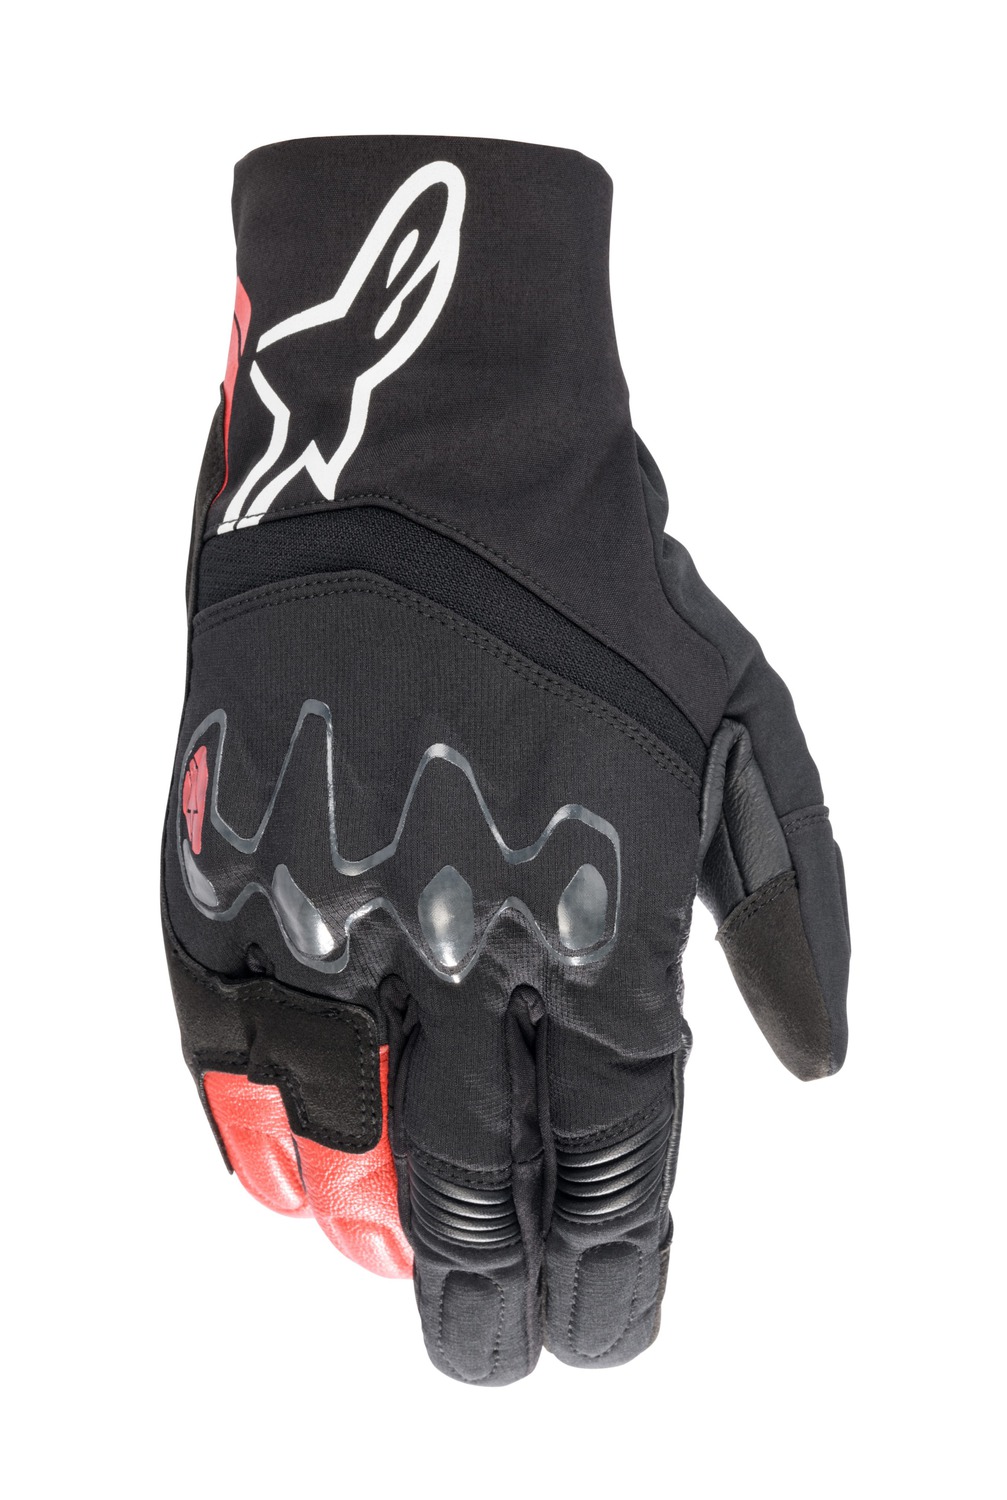 rukavice HYDE XT DRYSTAR, ALPINESTARS (černá/červená) 2024